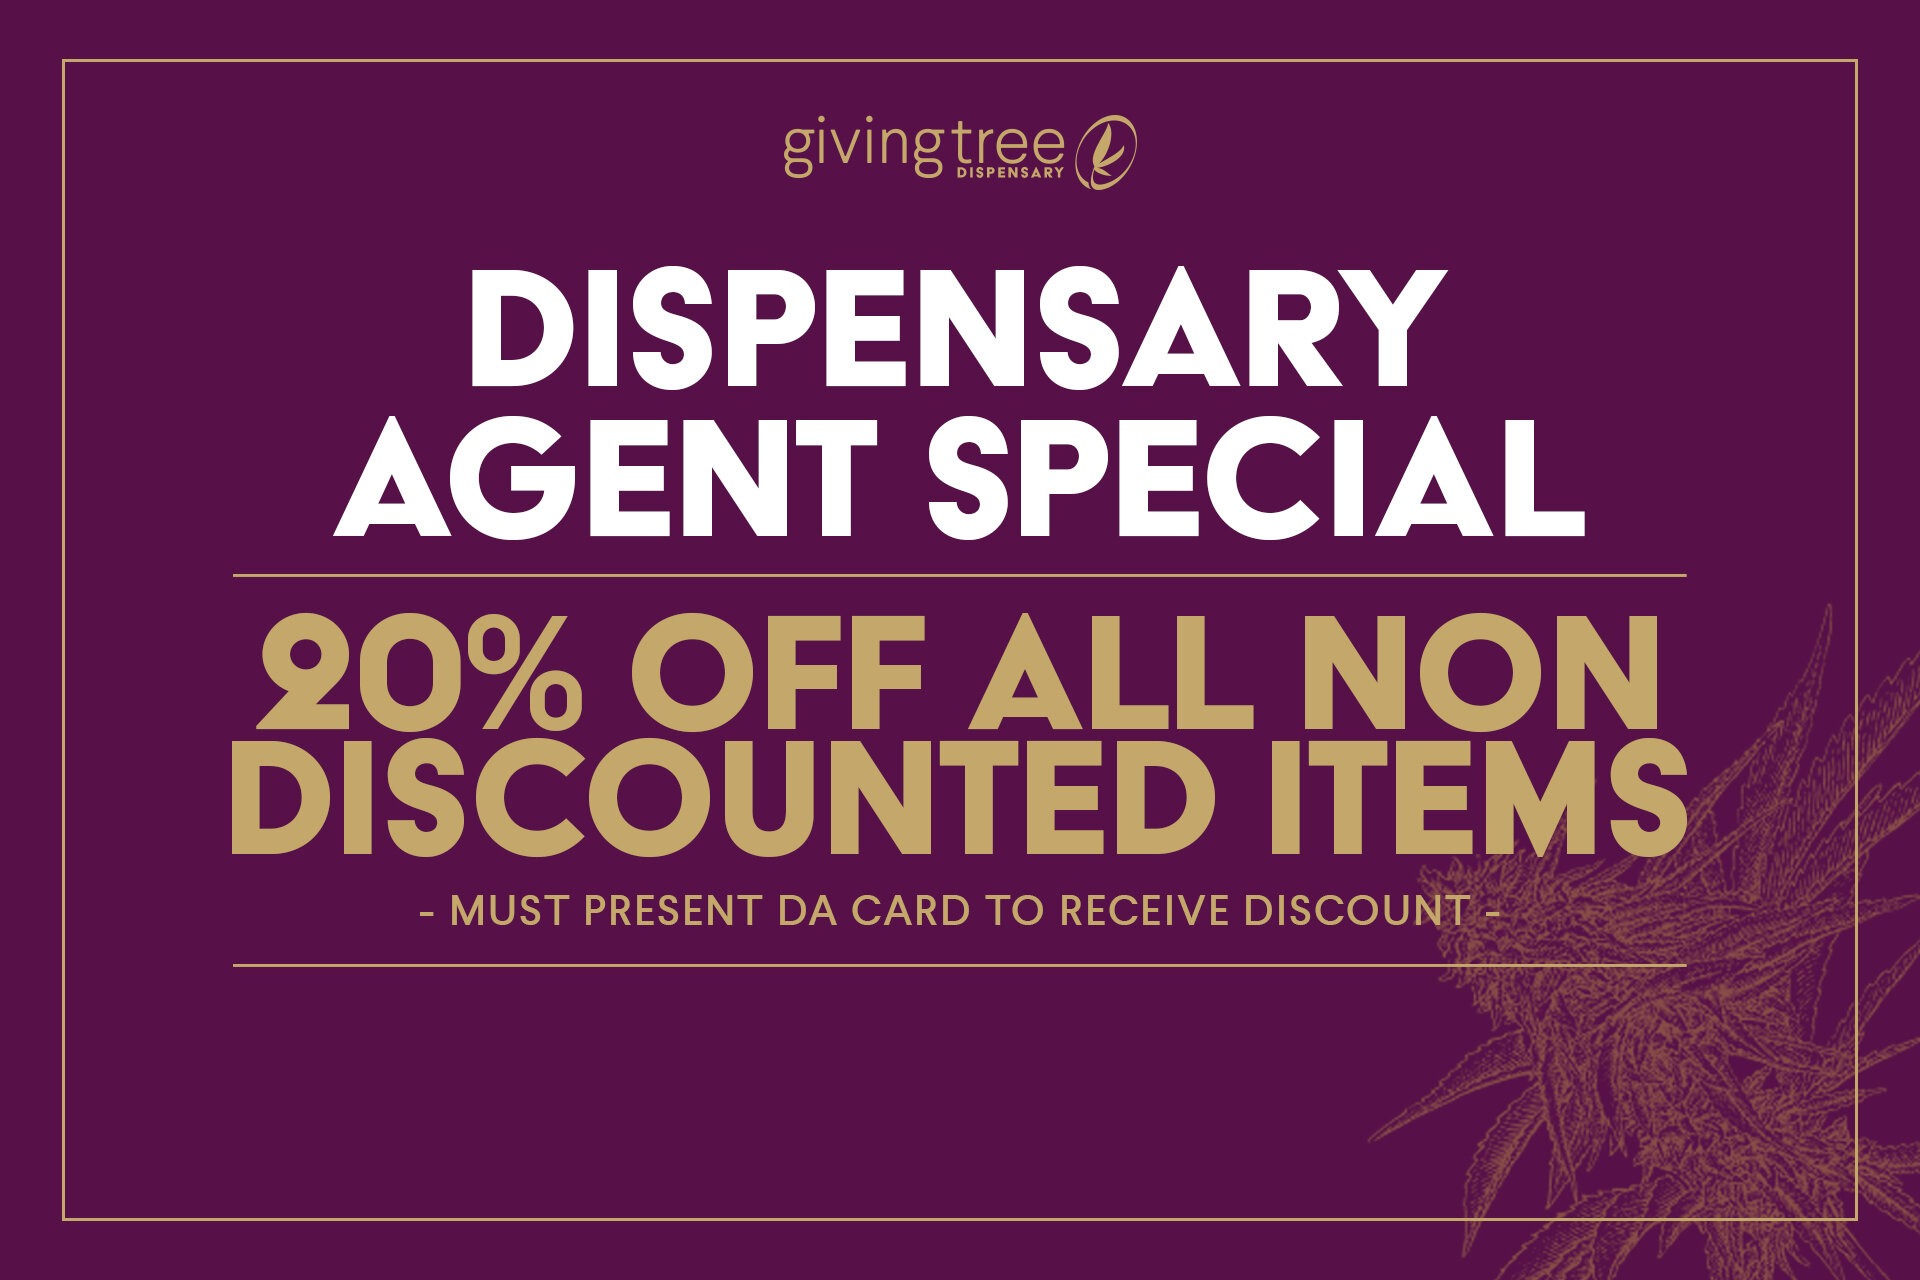 phoenix dispensary agent special givingtreedispensary.com